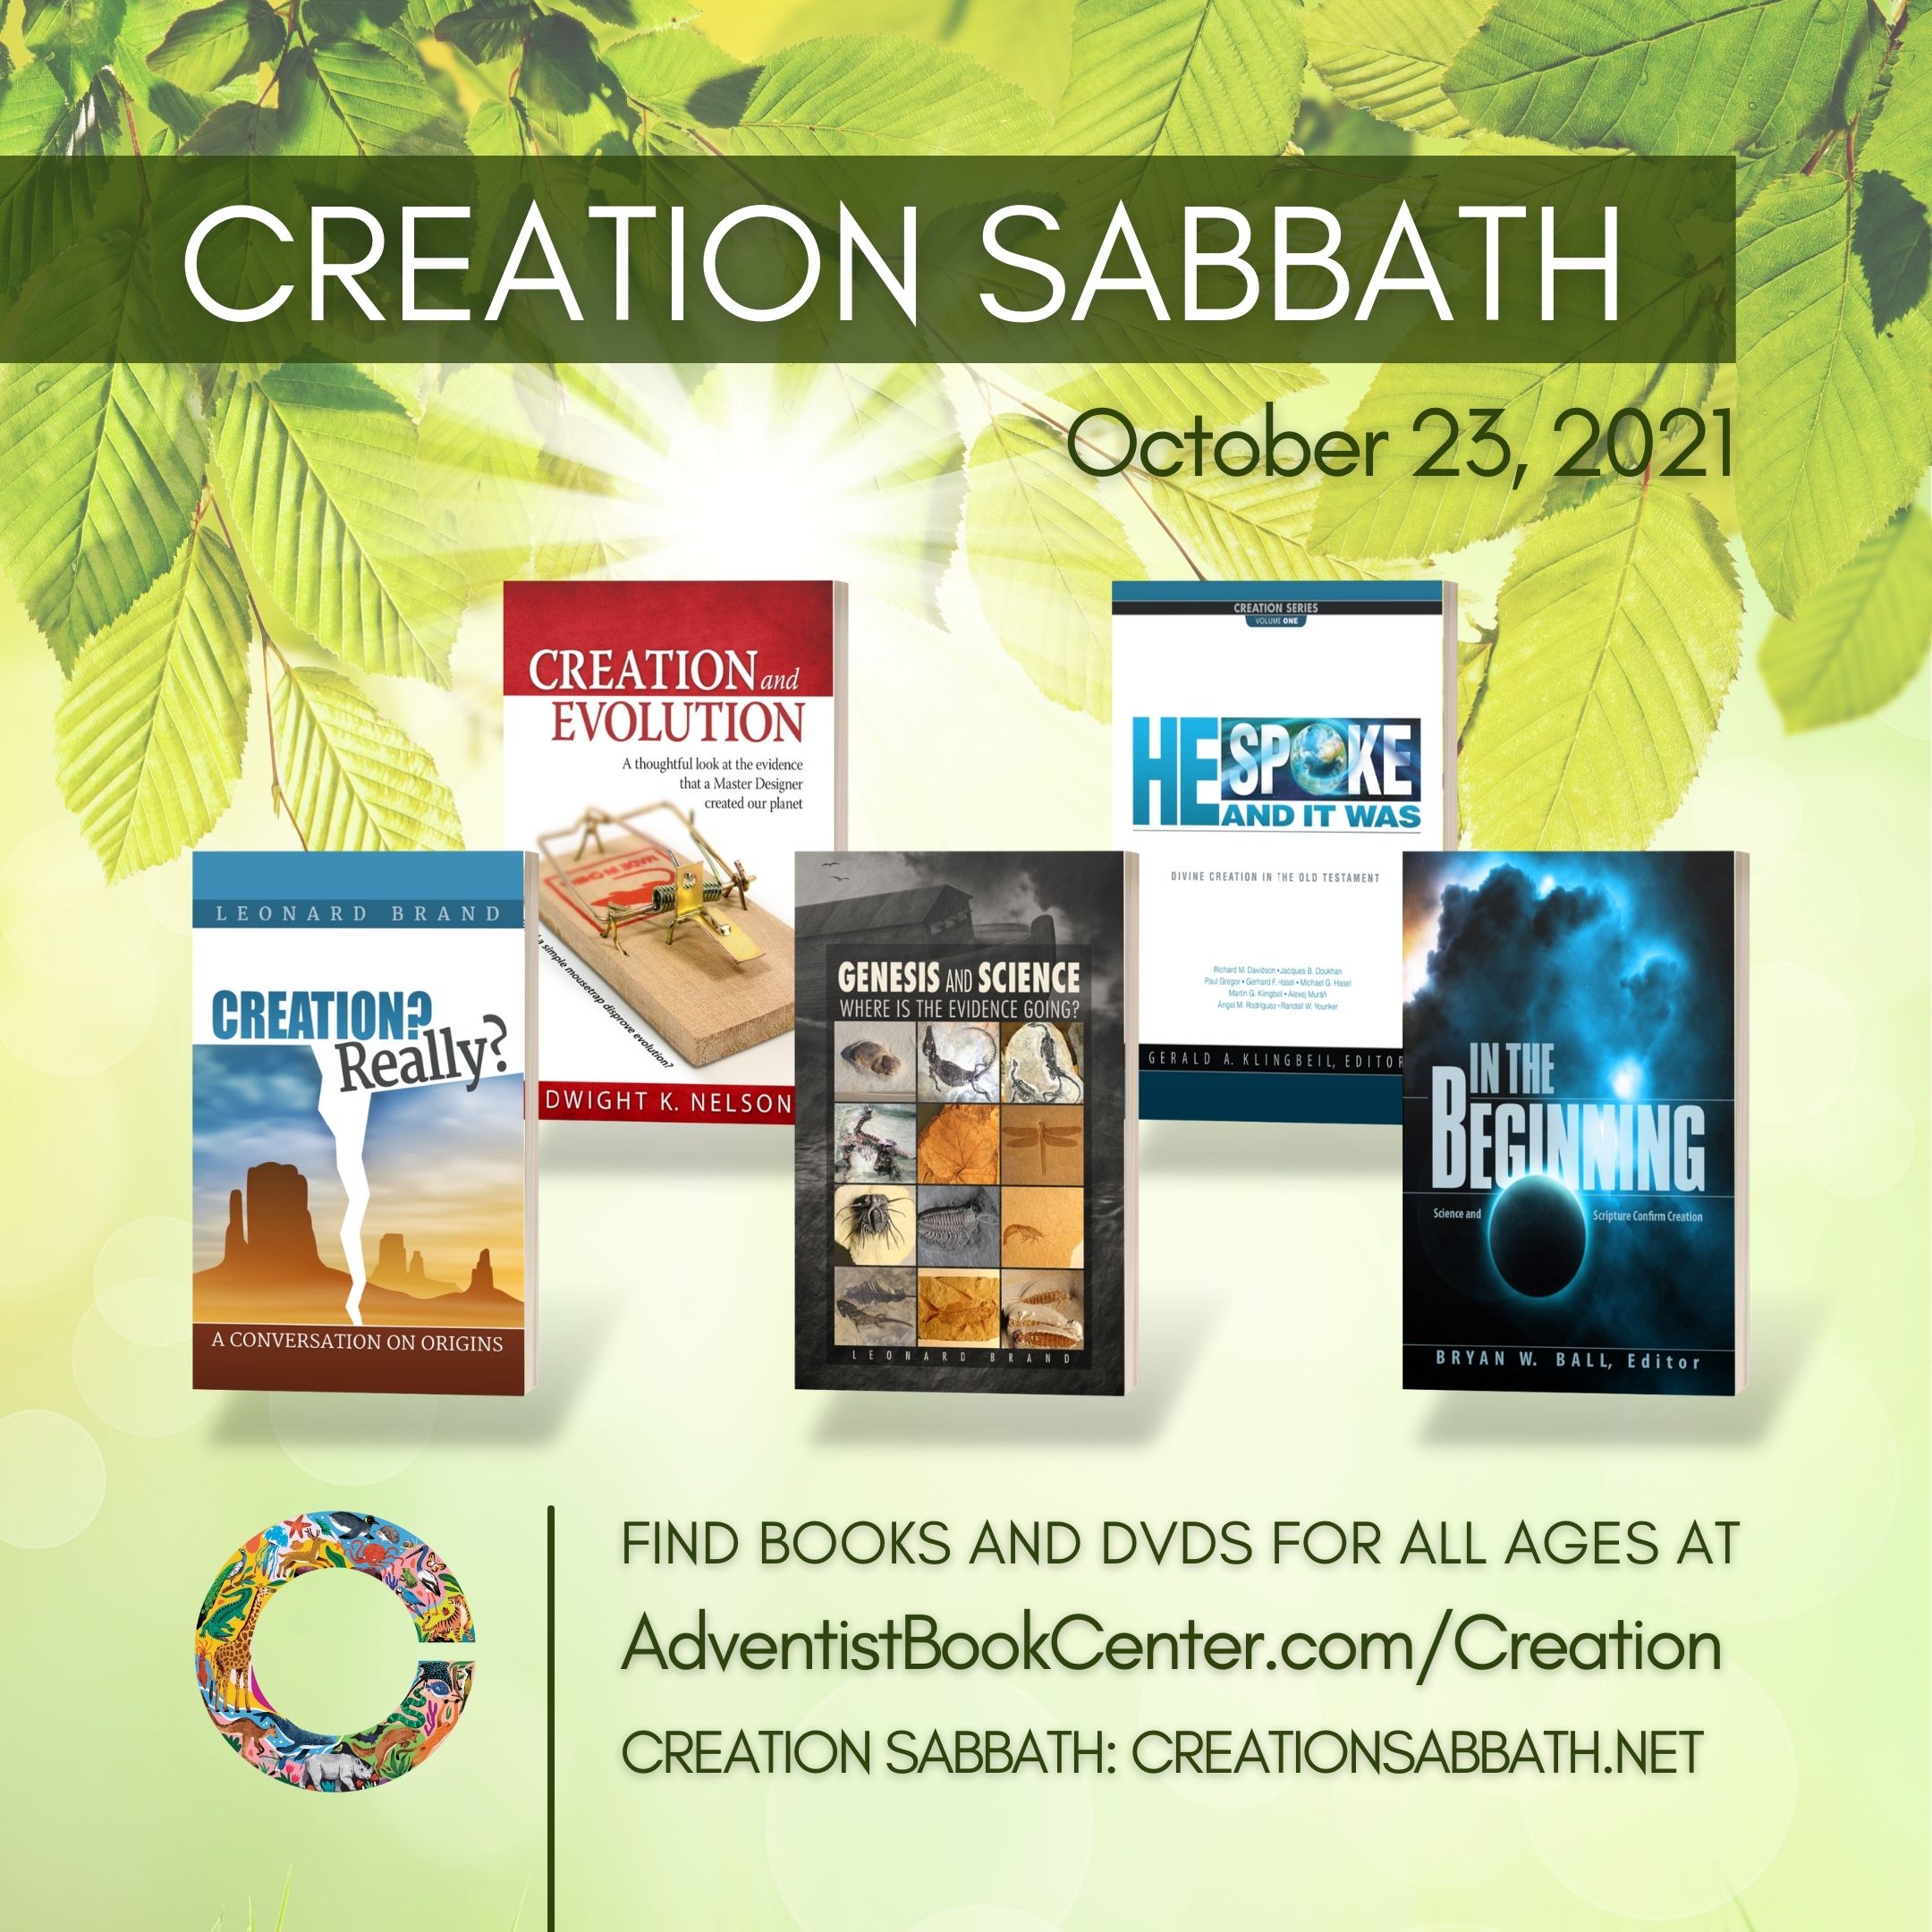 Creation Sabbath 2021 resources